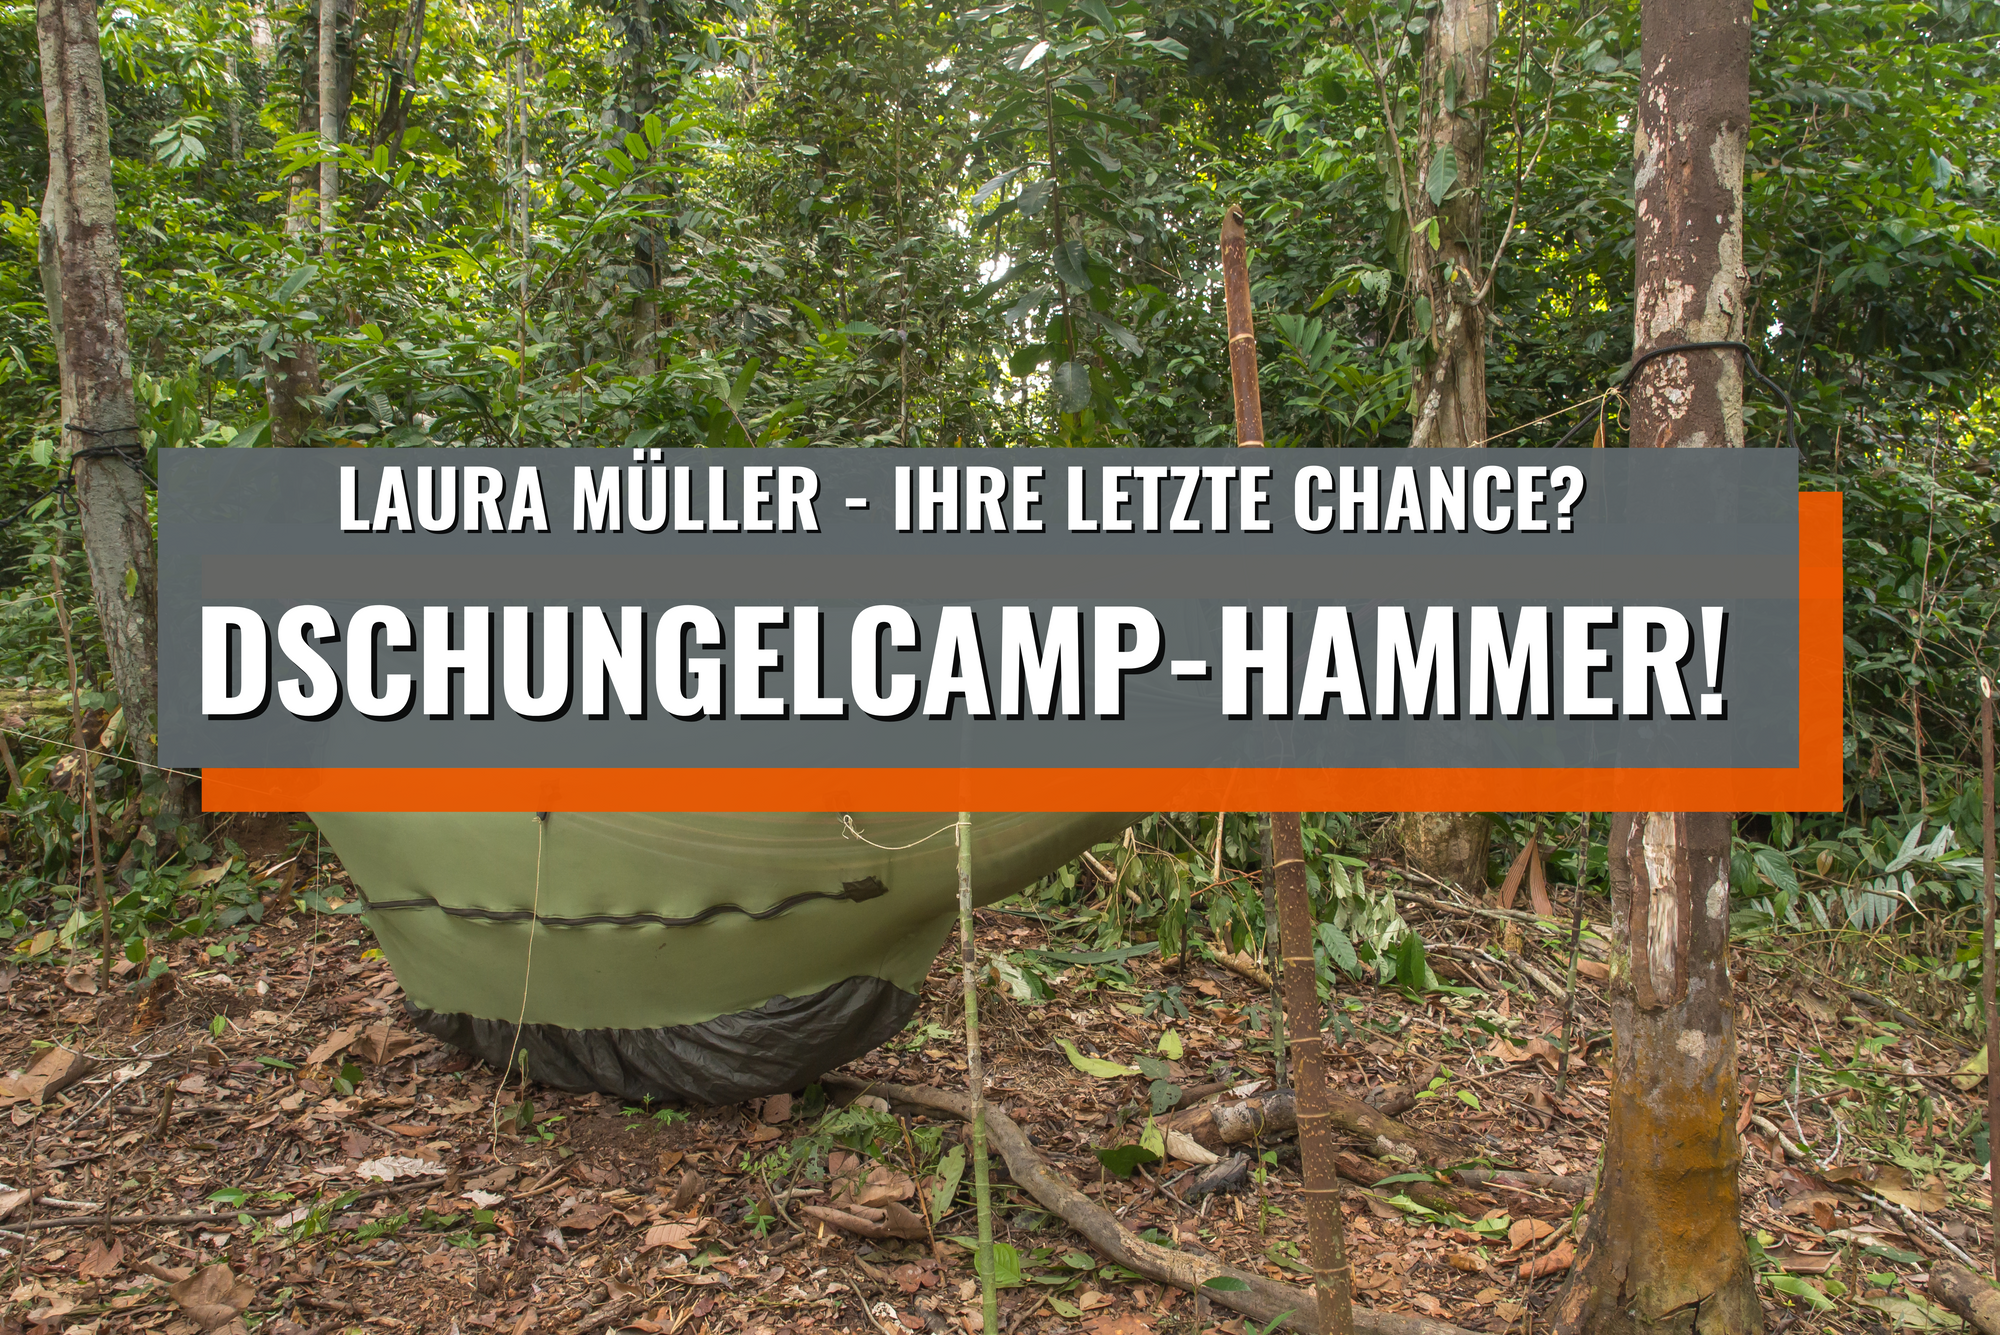 Dschungel-Camp Hammer: Laura Müller sagt nun doch zu – ihre letzte Chance?